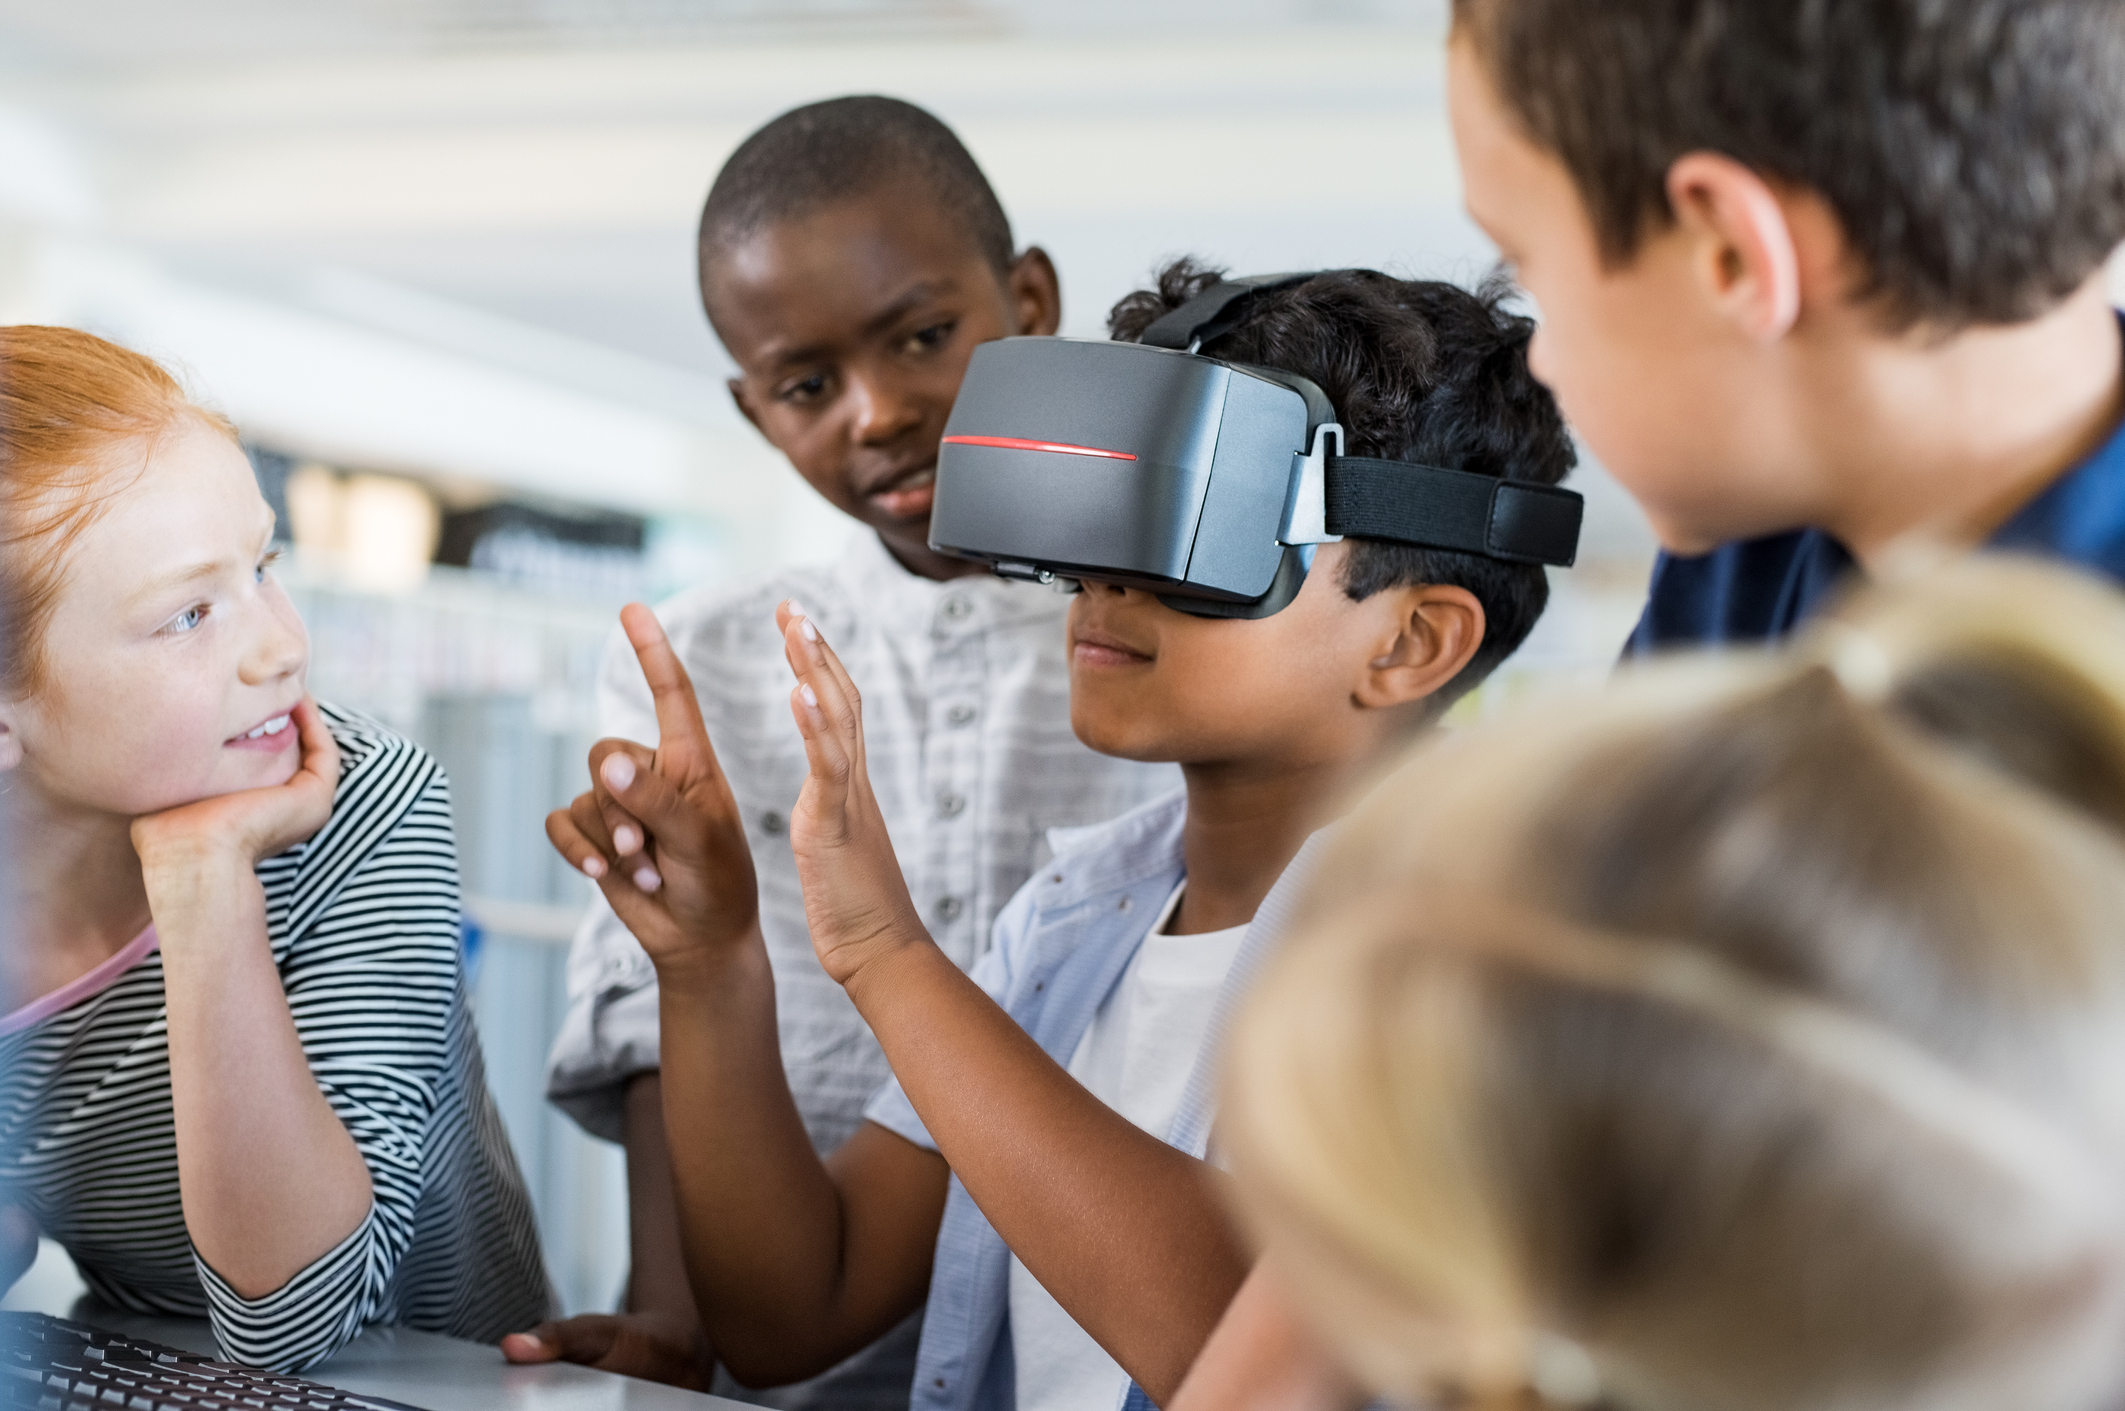 Nesta imagem podemos ver crianças da Geração Alpha reunidas para discutir alguma coisa e fazem uso de um óculos de realidade virtual.